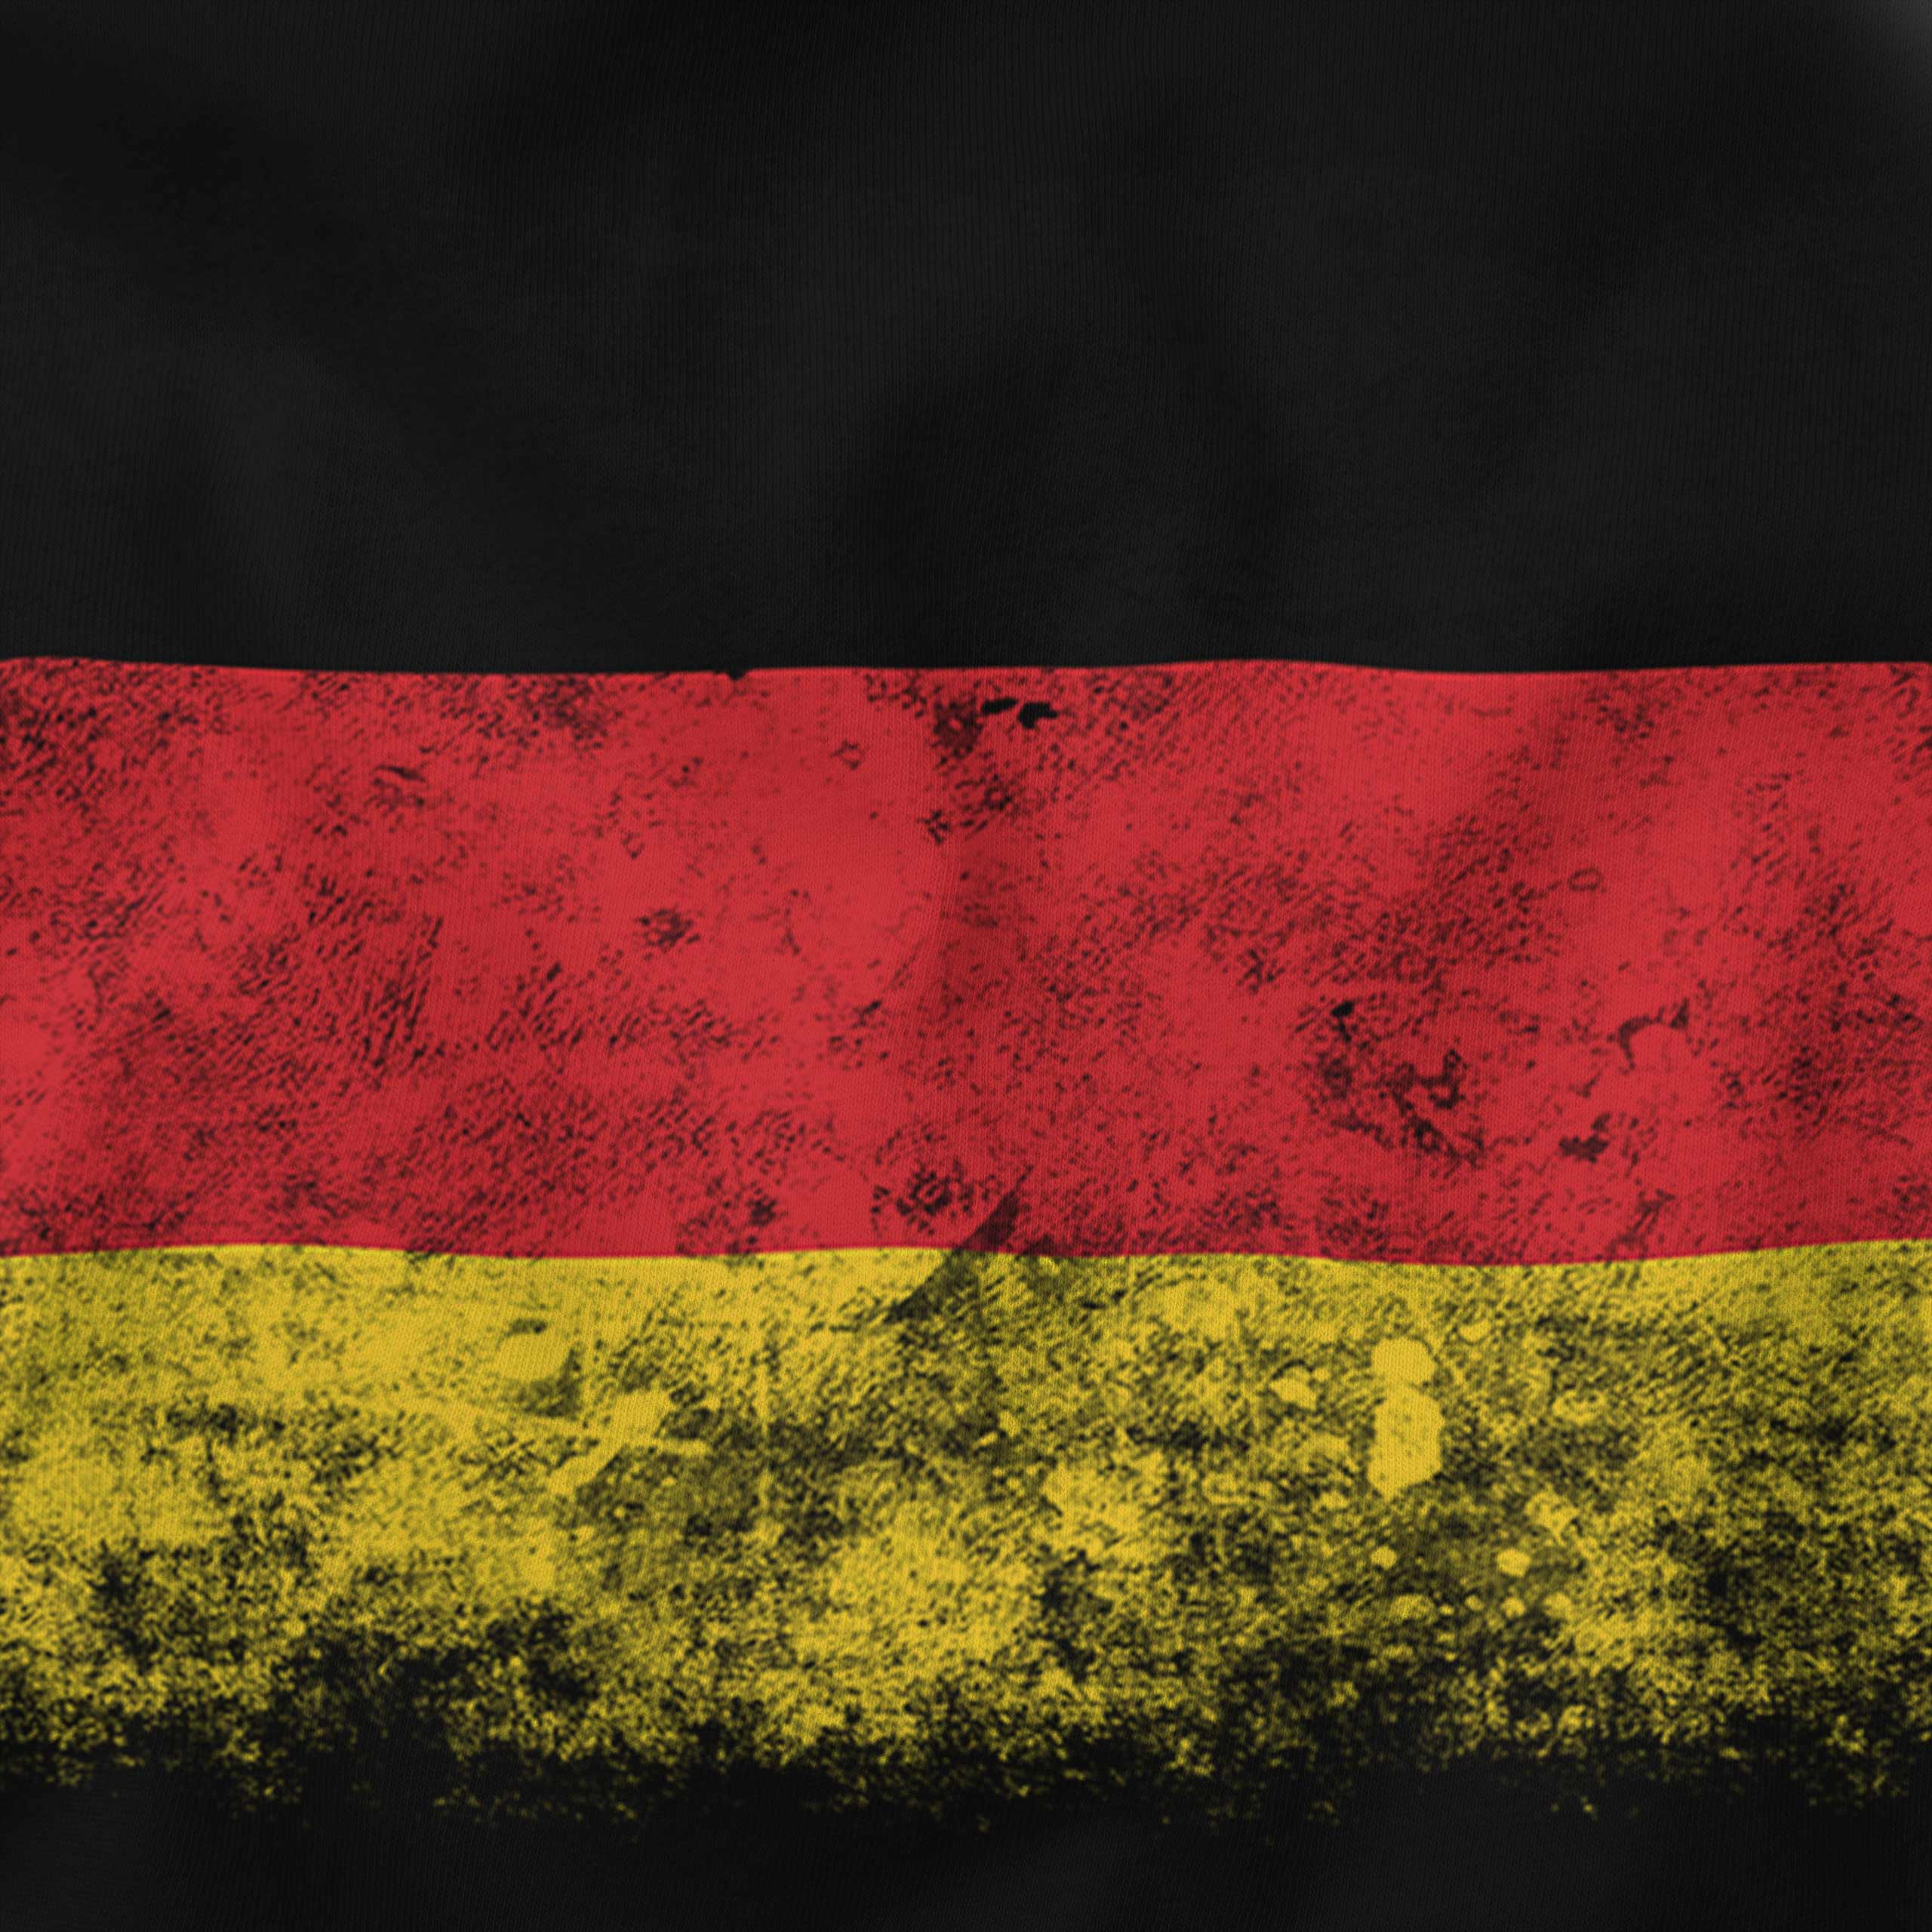 Deutschland in German Flag - Deutschland Flagge - T-Shirt